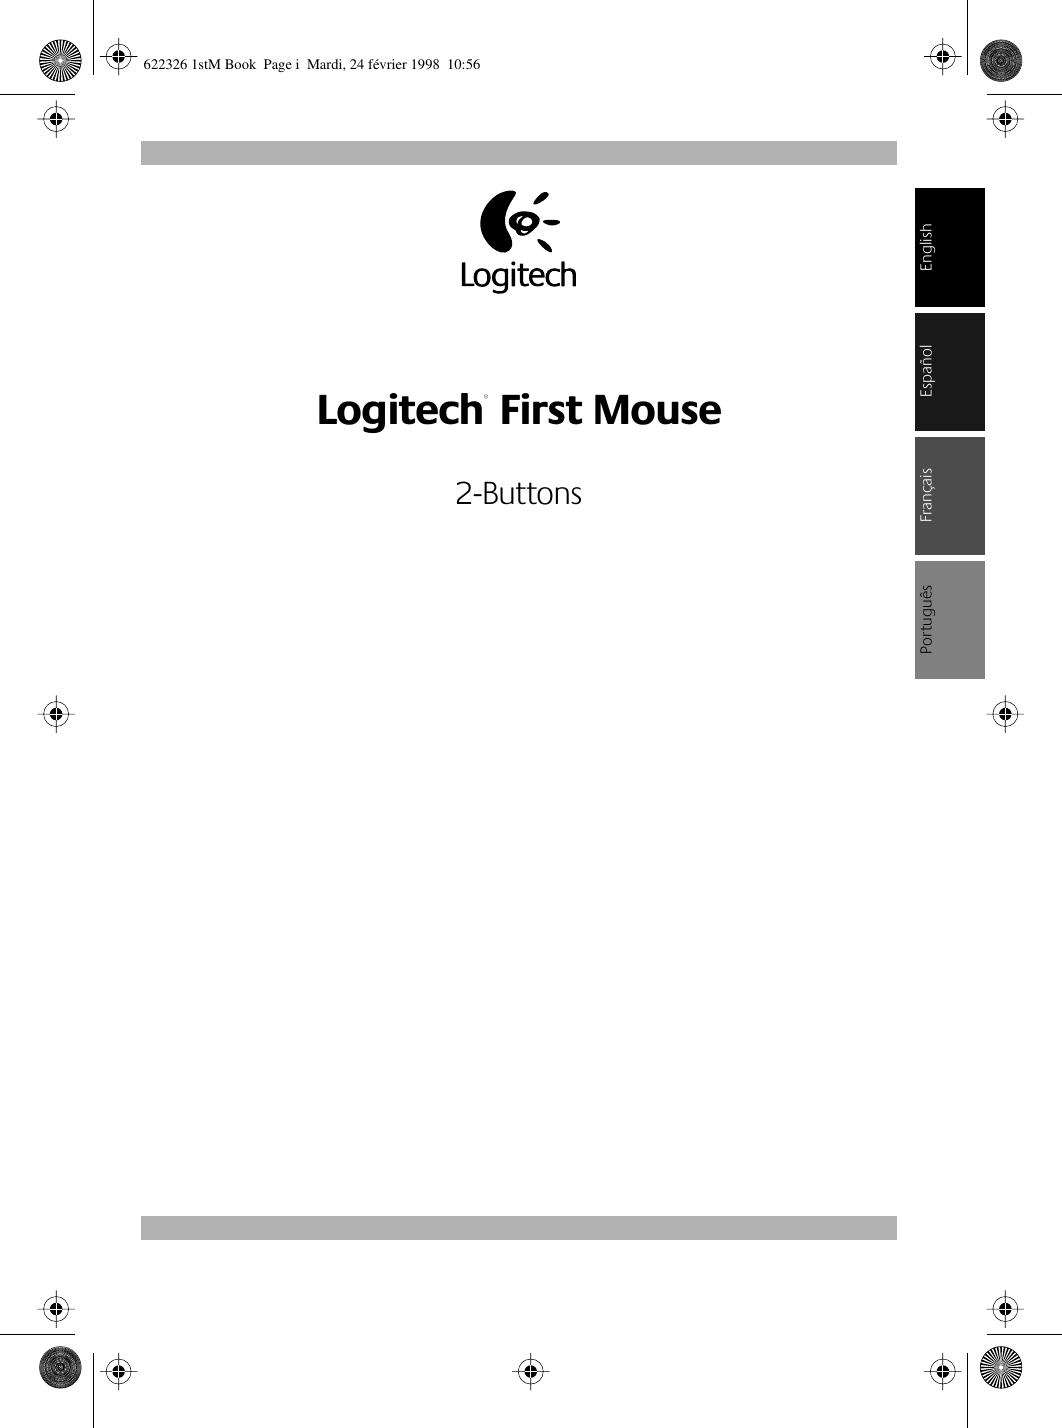  English Logitech ®  First Mouse 2-Buttons Français EspañolPortuguês 622326 1stM Book  Page i  Mardi, 24 février 1998  10:56